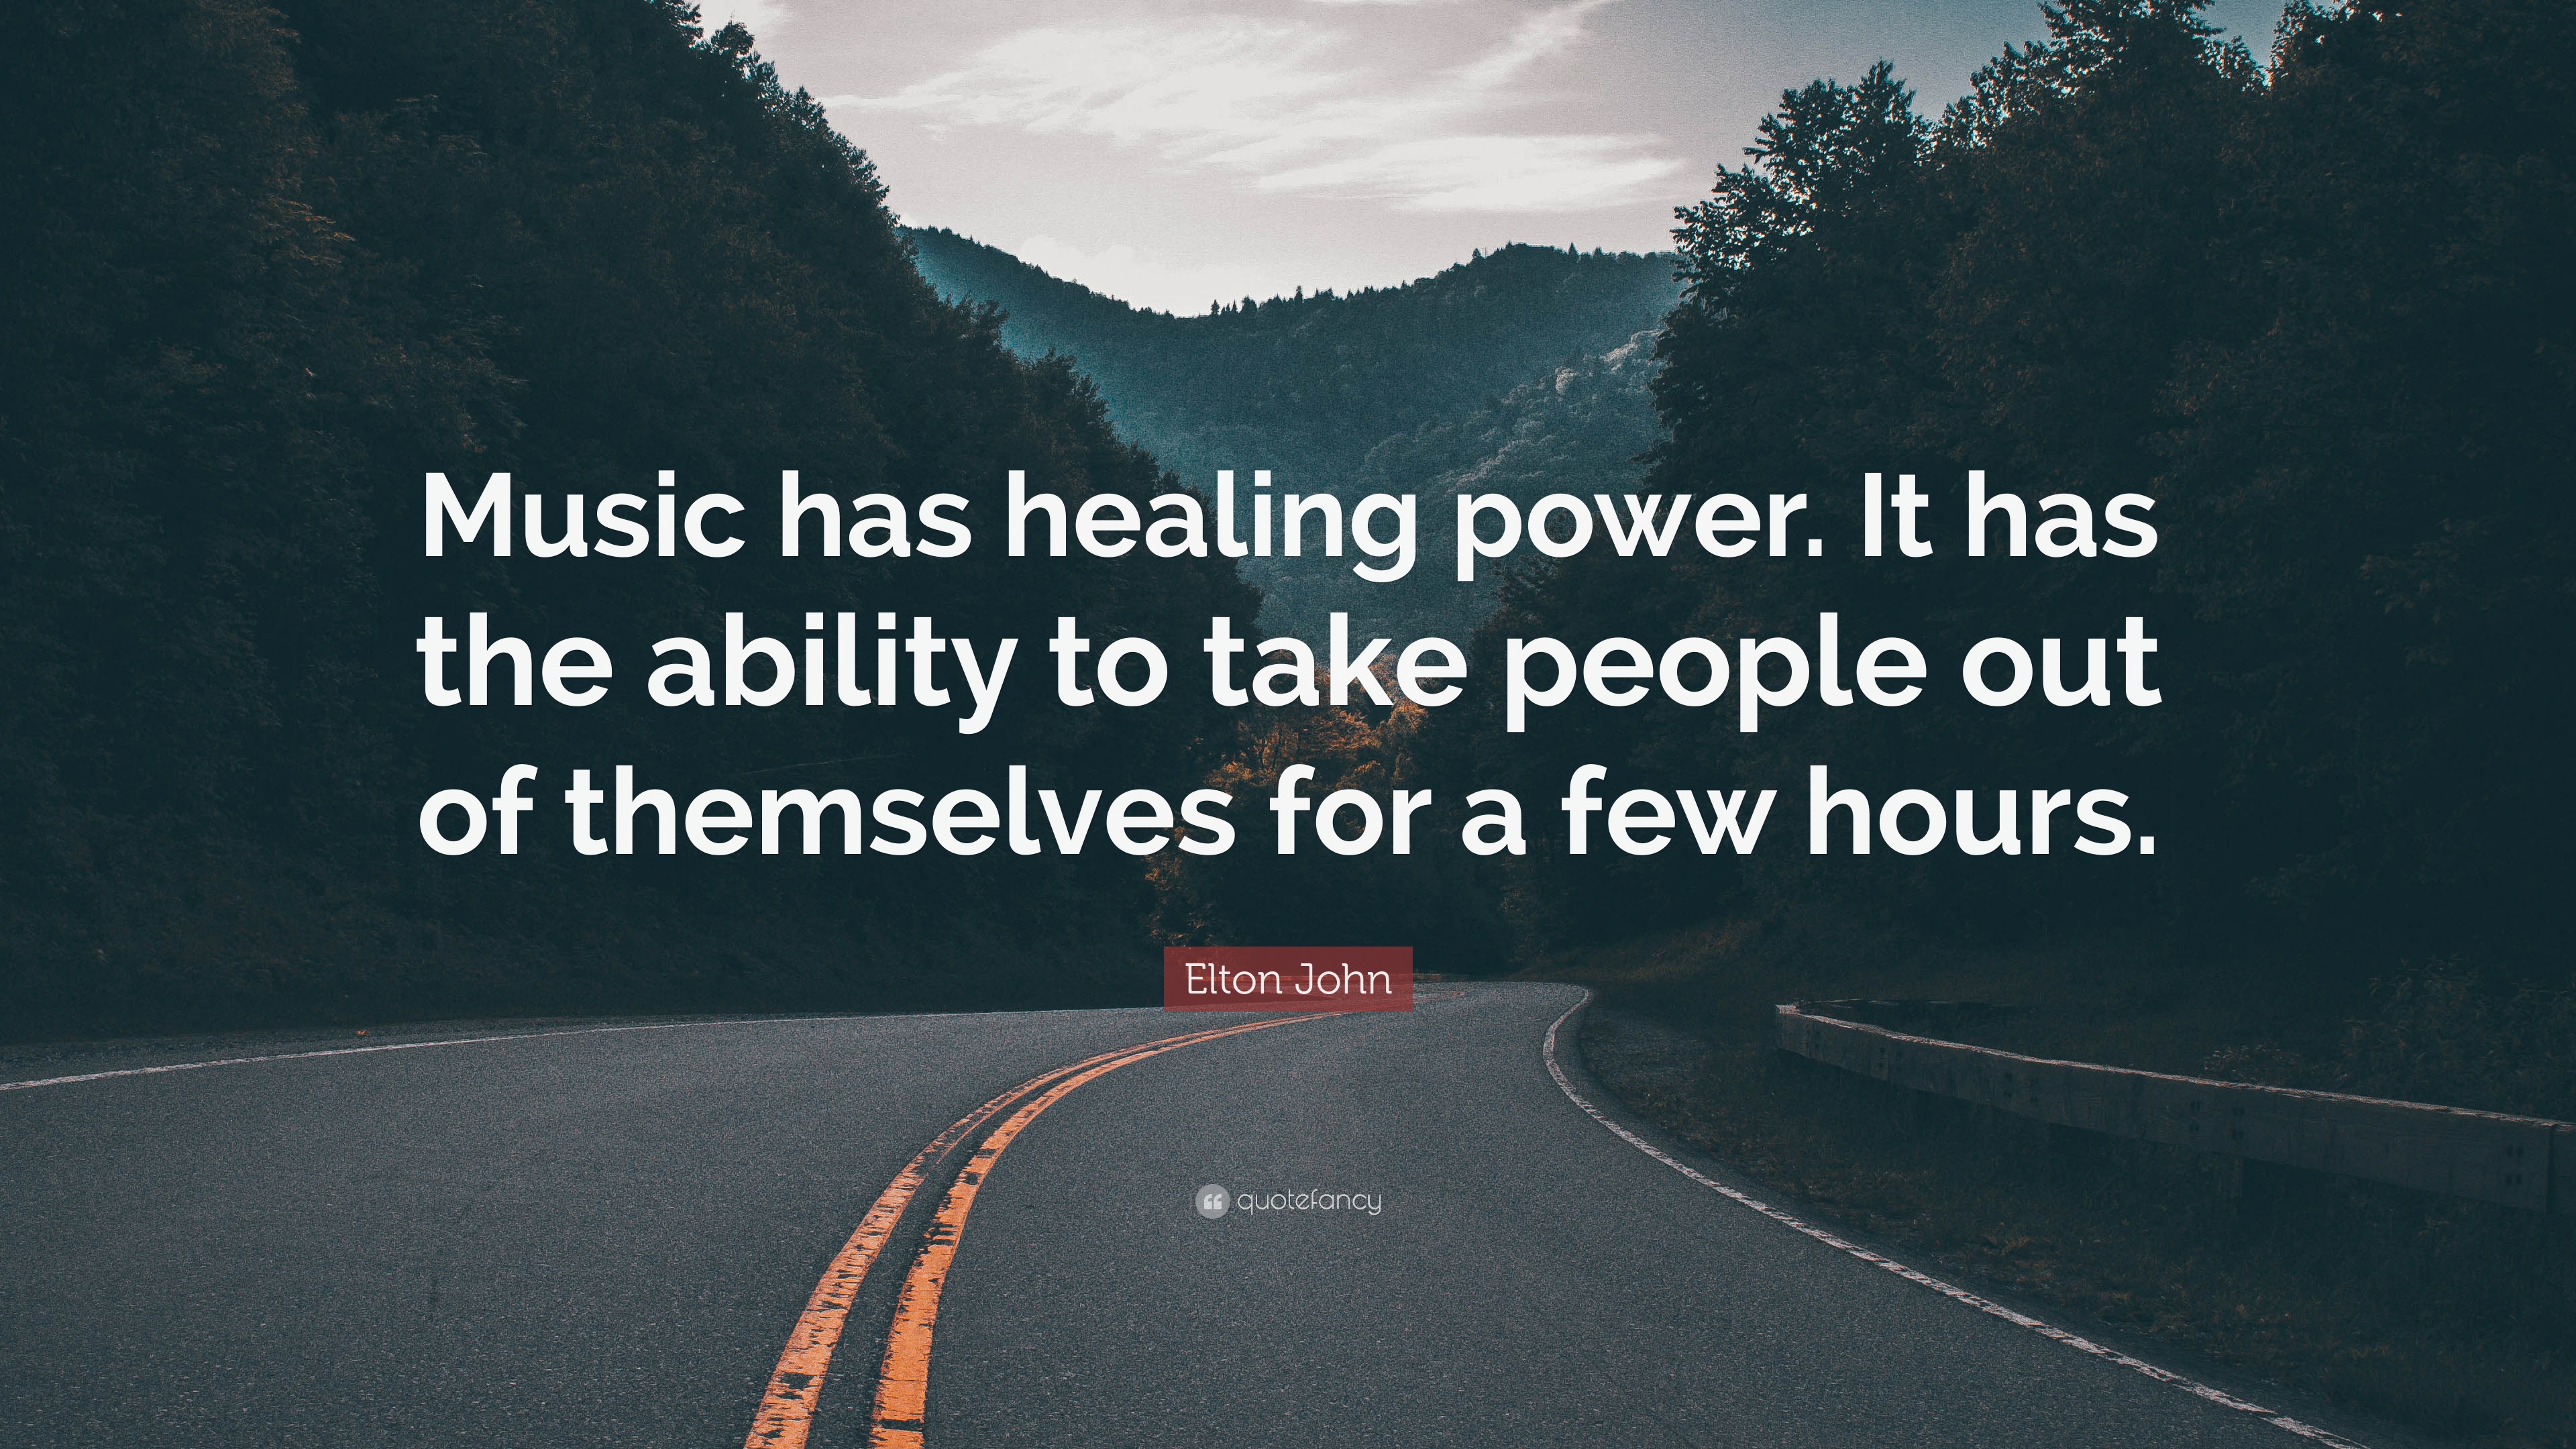 speech on music has a healing power